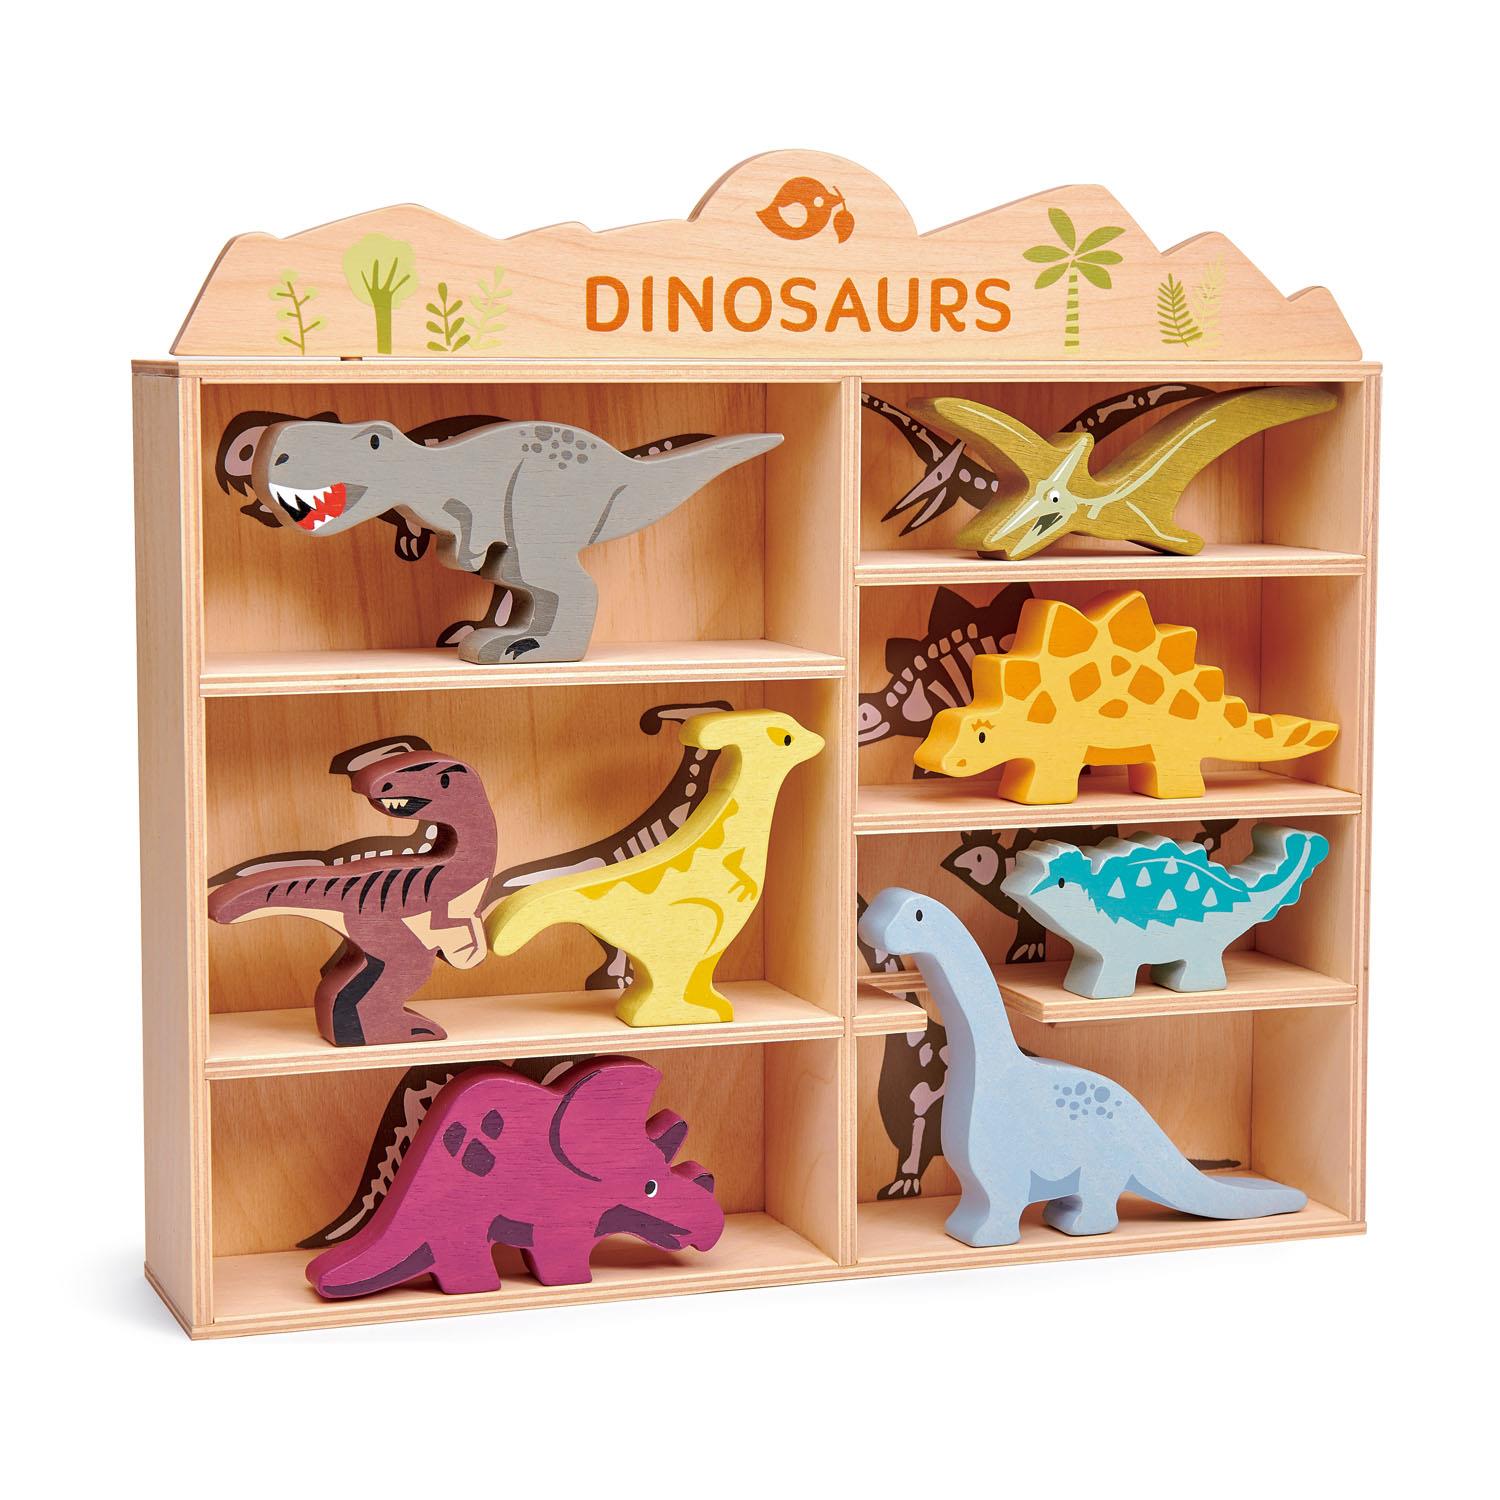 Tender Leaf Toys Wooden Dinosaurs Shelf Set